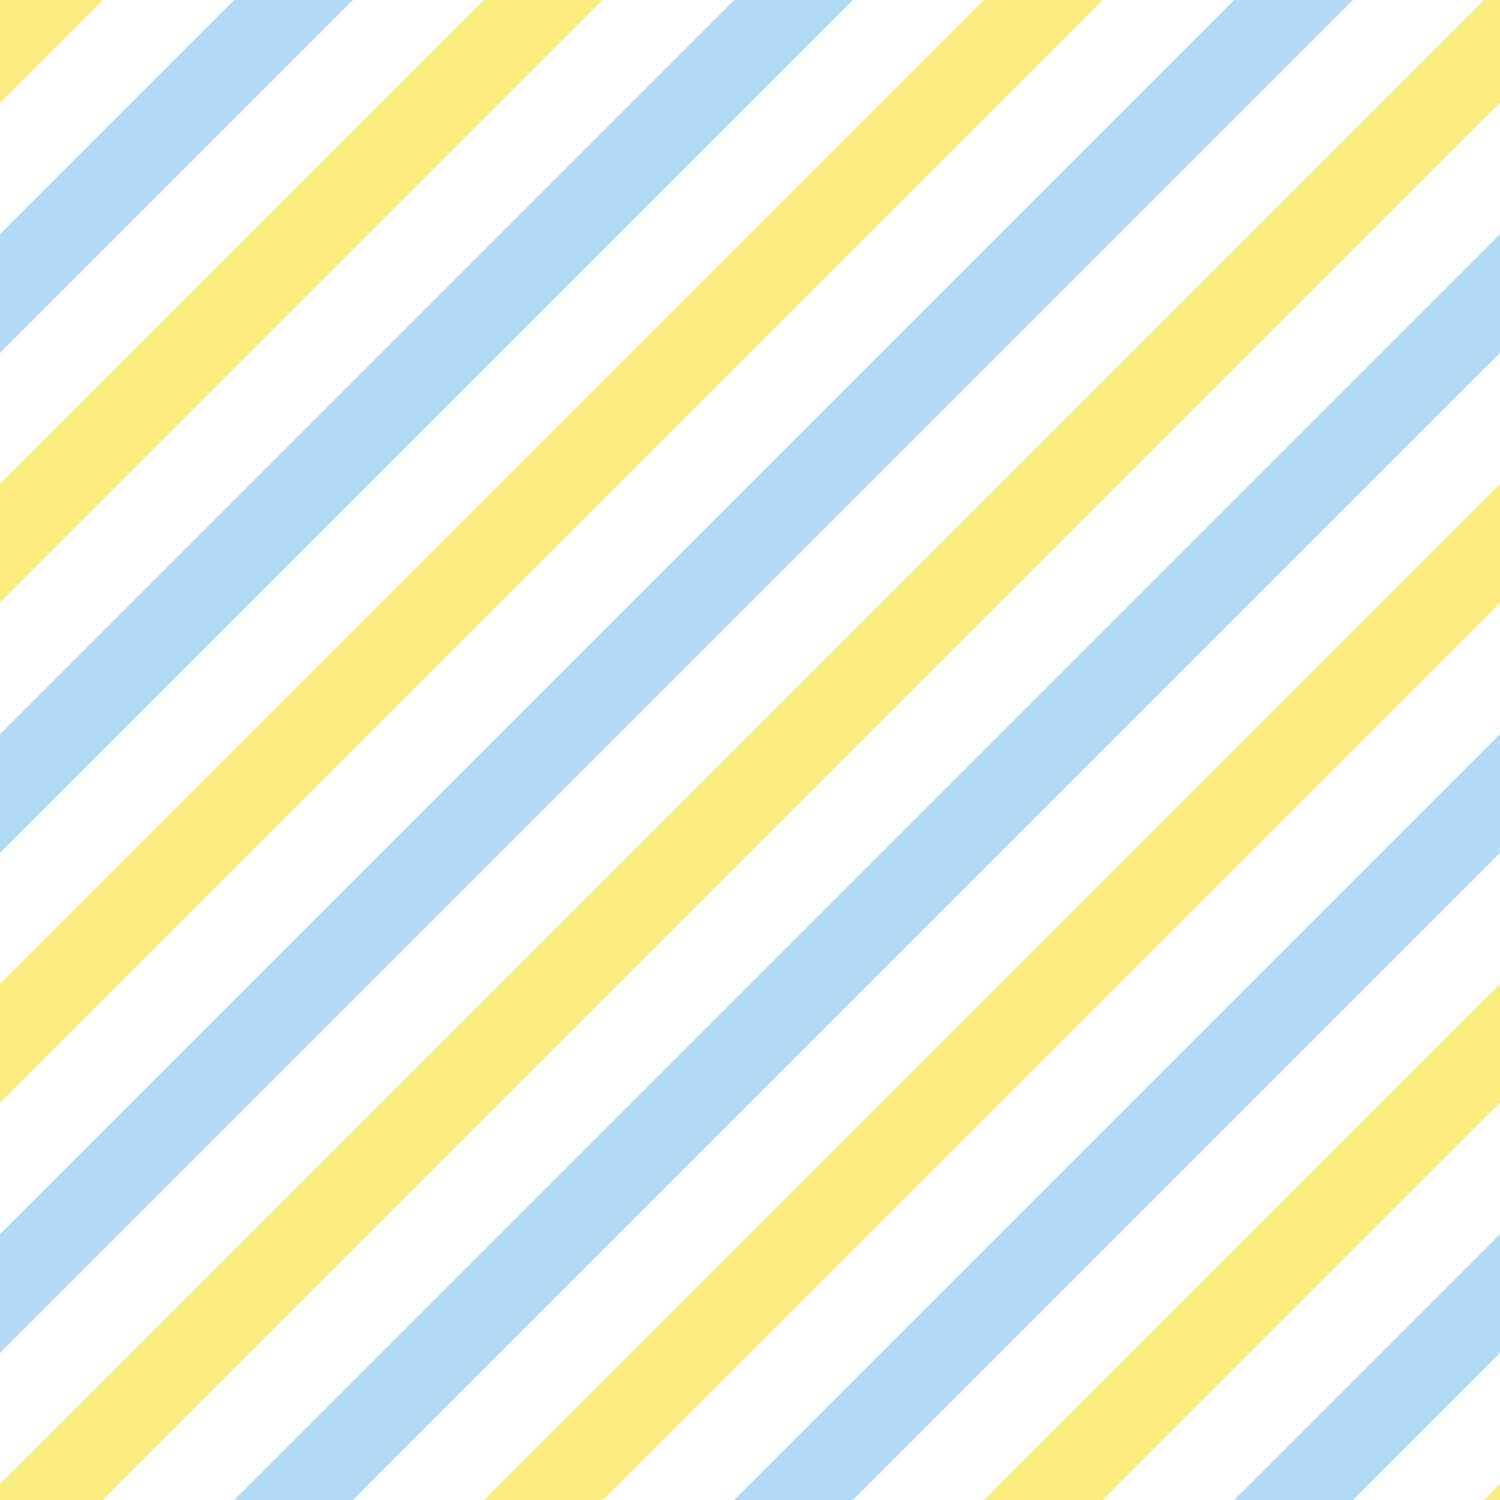 PP52-carré-papier-peint-adhesif-decoratif-revetement-vinyle-rayures-diagonales-bleu-et-jaune-renovation-meuble-mur-min